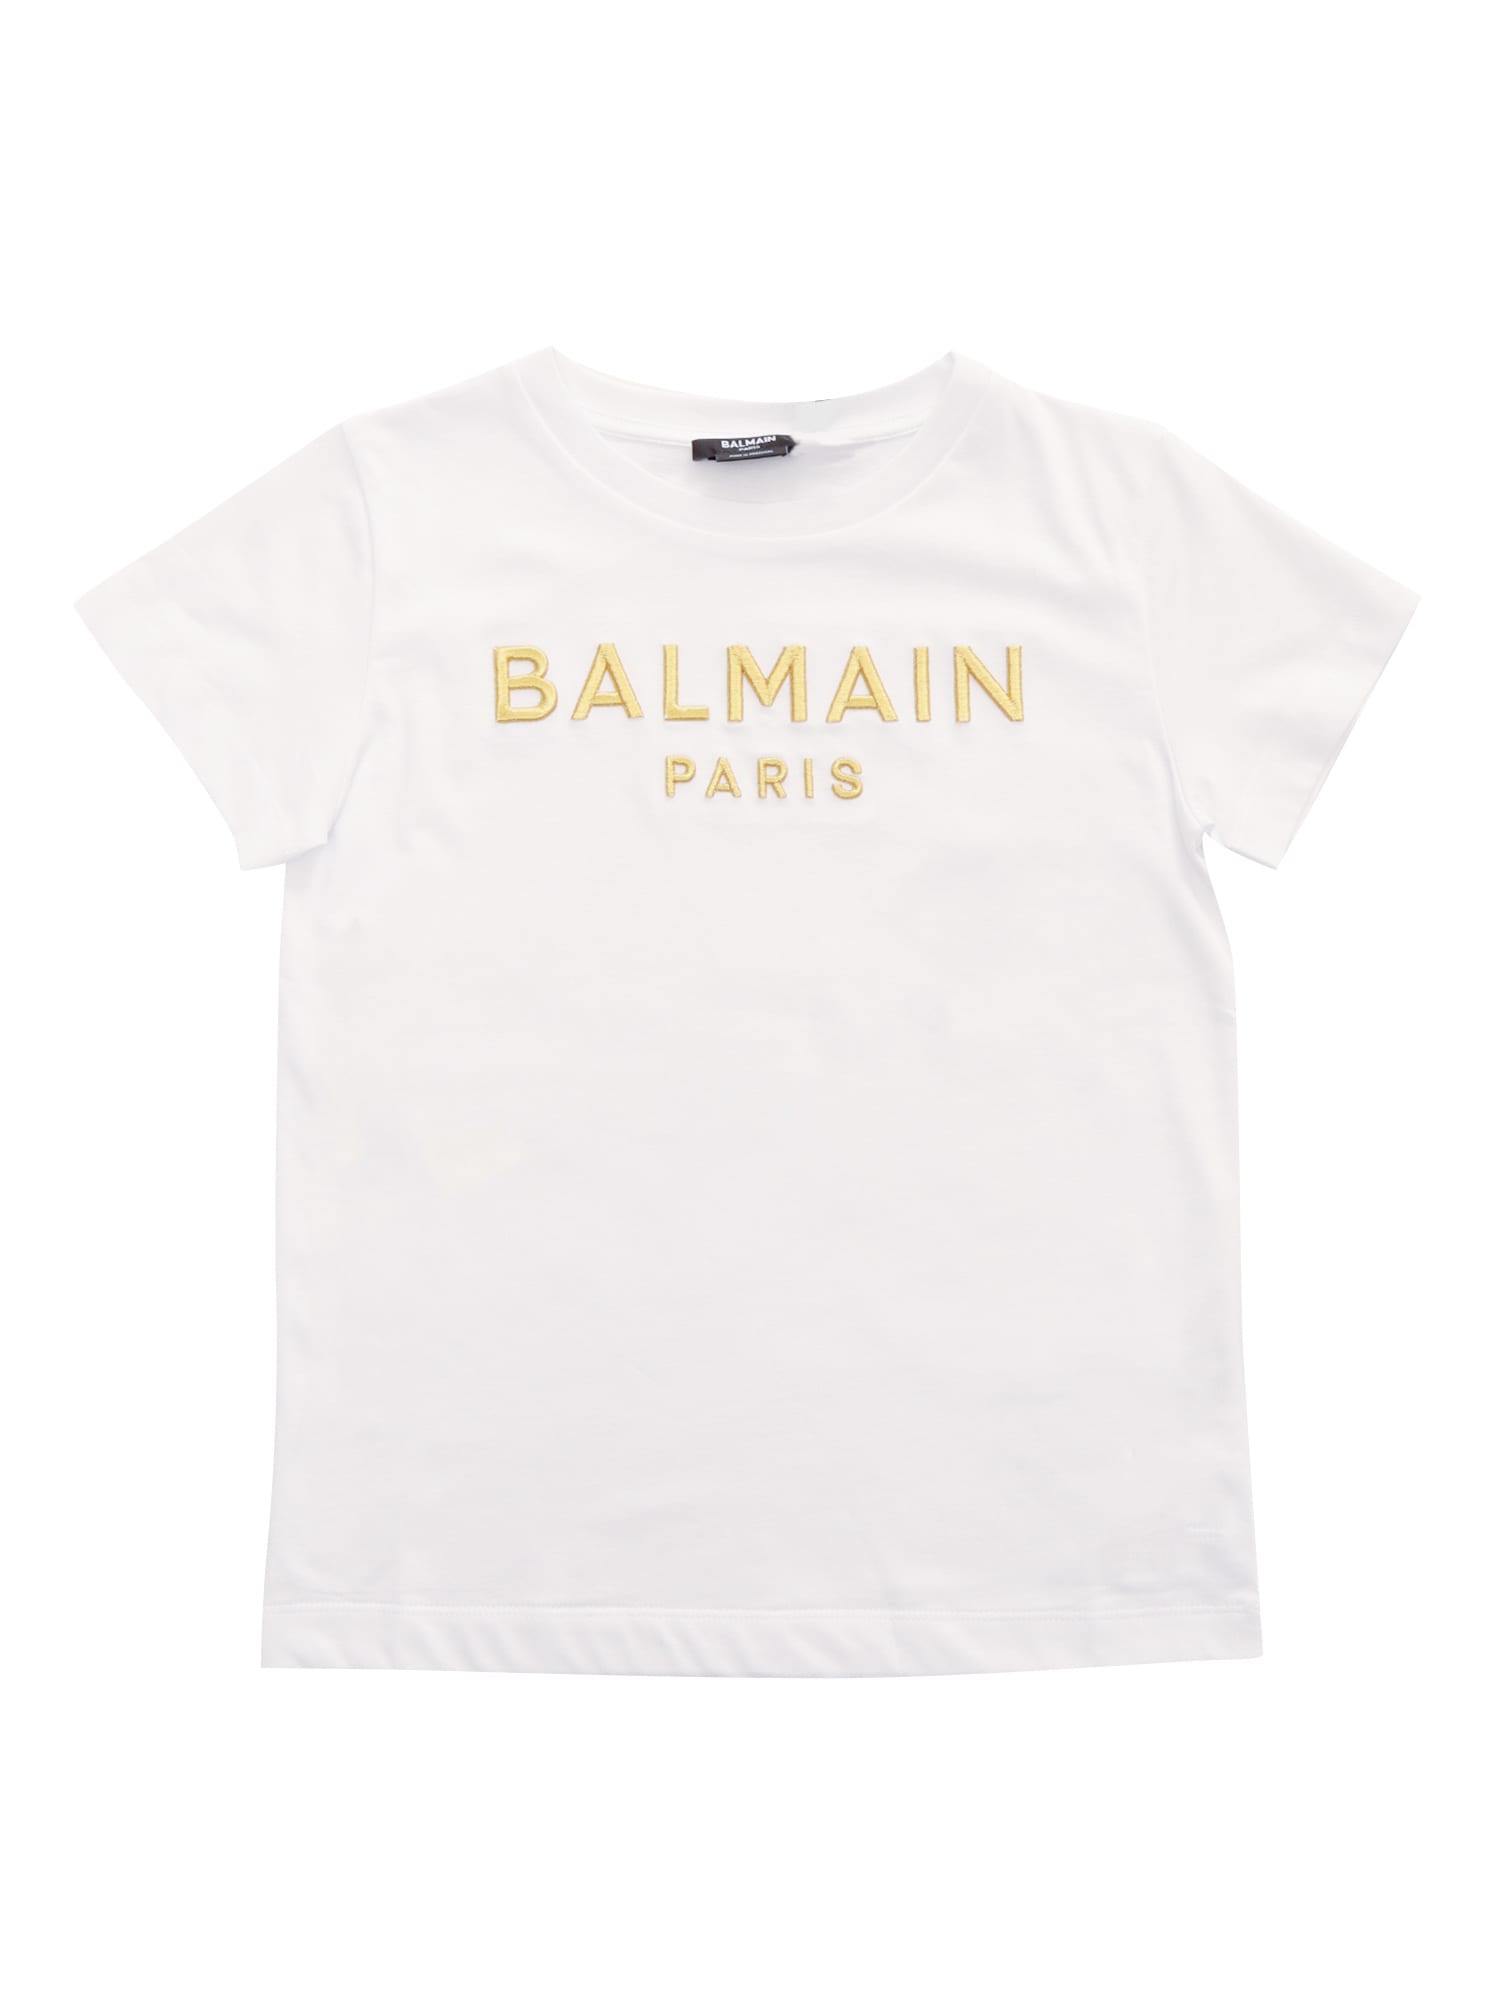 Hav Har råd til løn Balmain Kids' Girls White & Gold Logo T-shirt | ModeSens